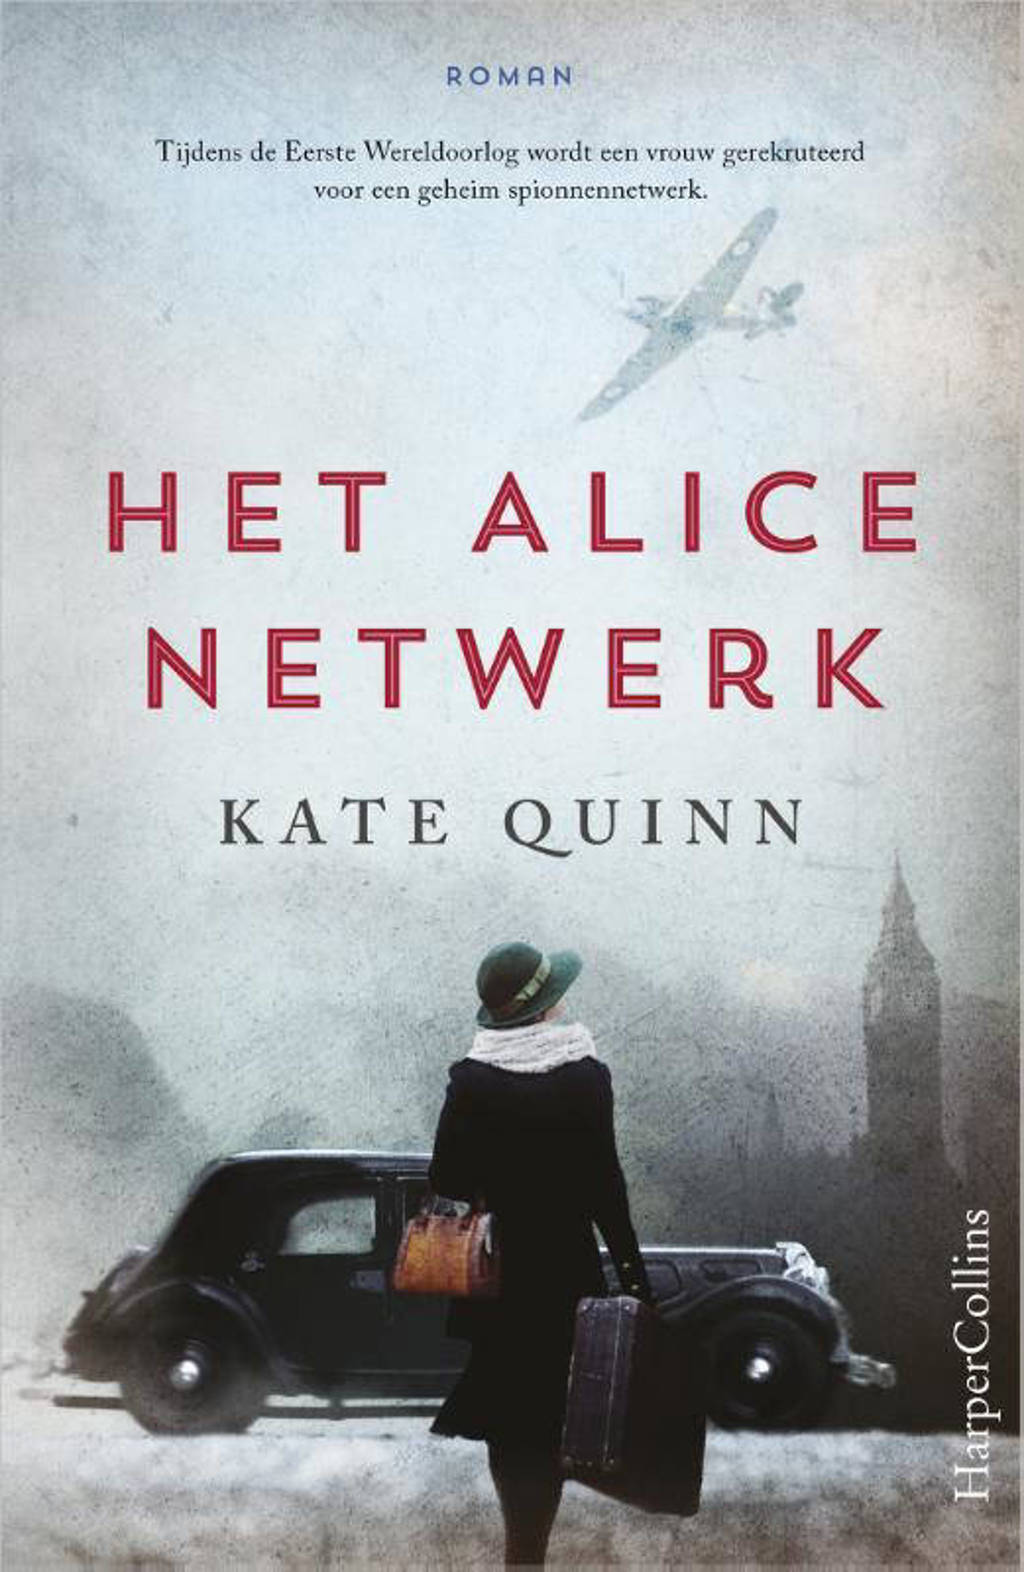 Het Alice netwerk - Kate Quinn